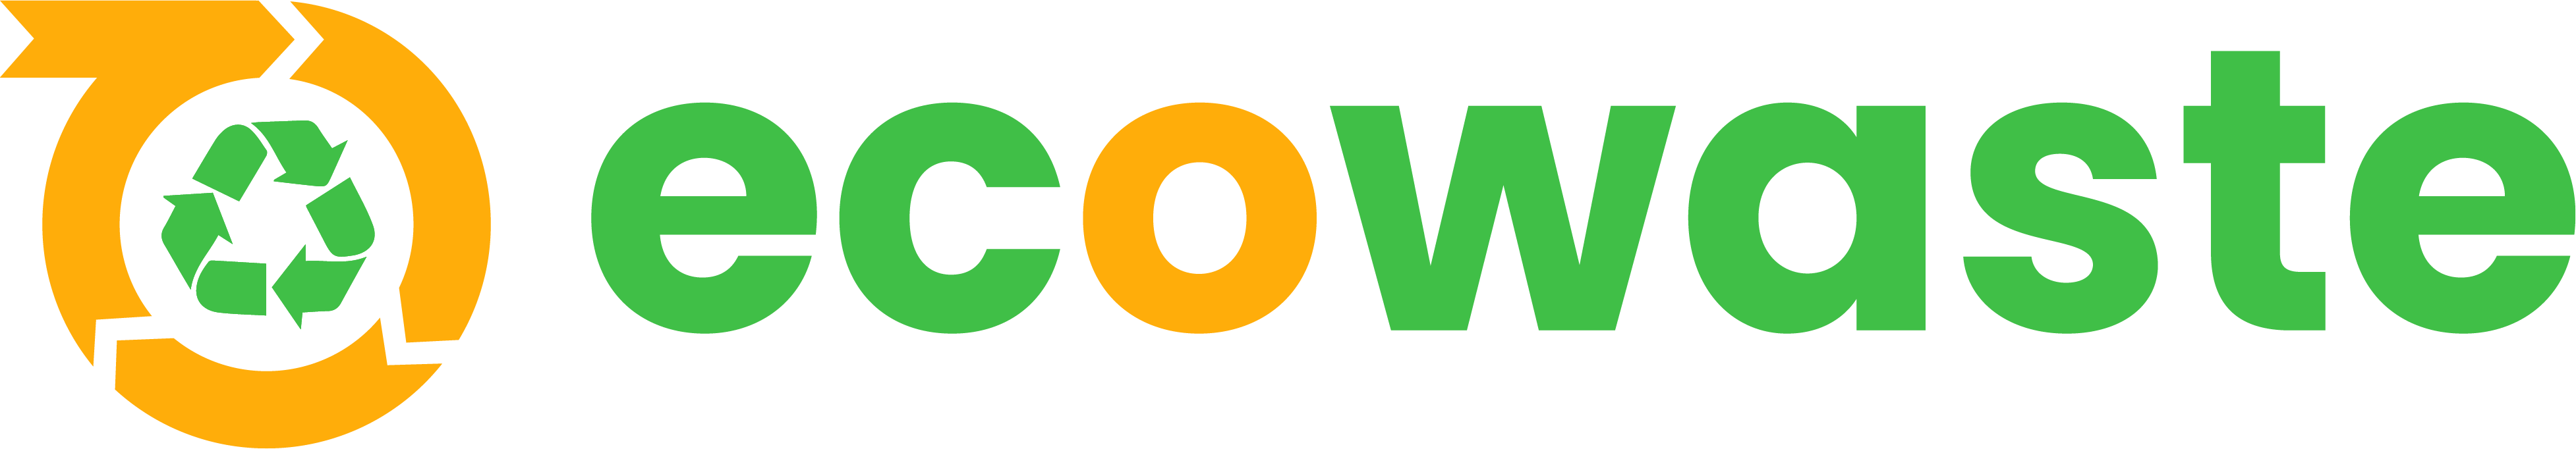 Client logo 1 (5)